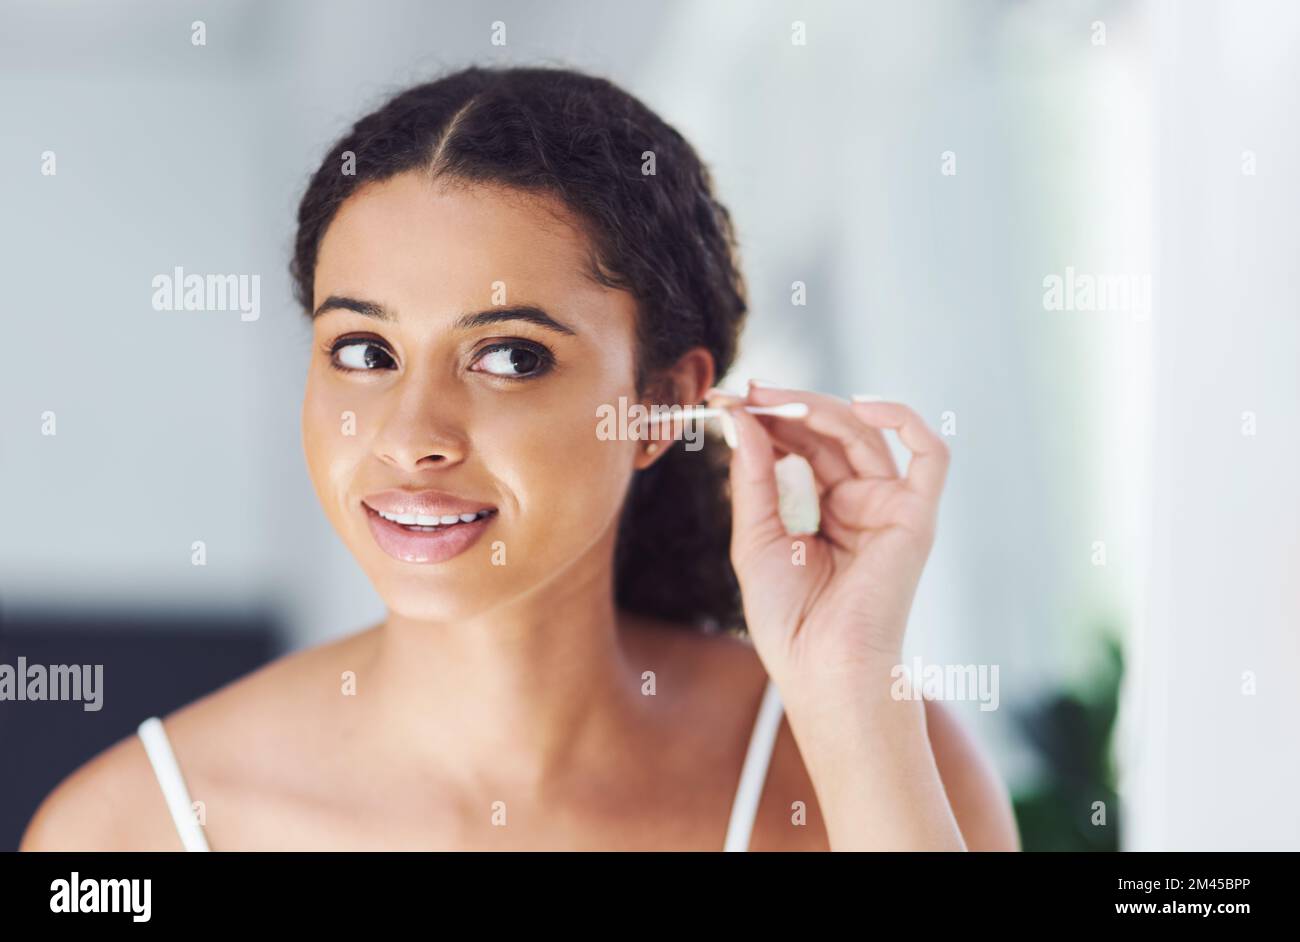 Man muss sich um die schwer erreichbaren Stellen kümmern. Eine attraktive junge Frau, die sich die Ohren mit einem Wattestäbchen putzt. Stockfoto